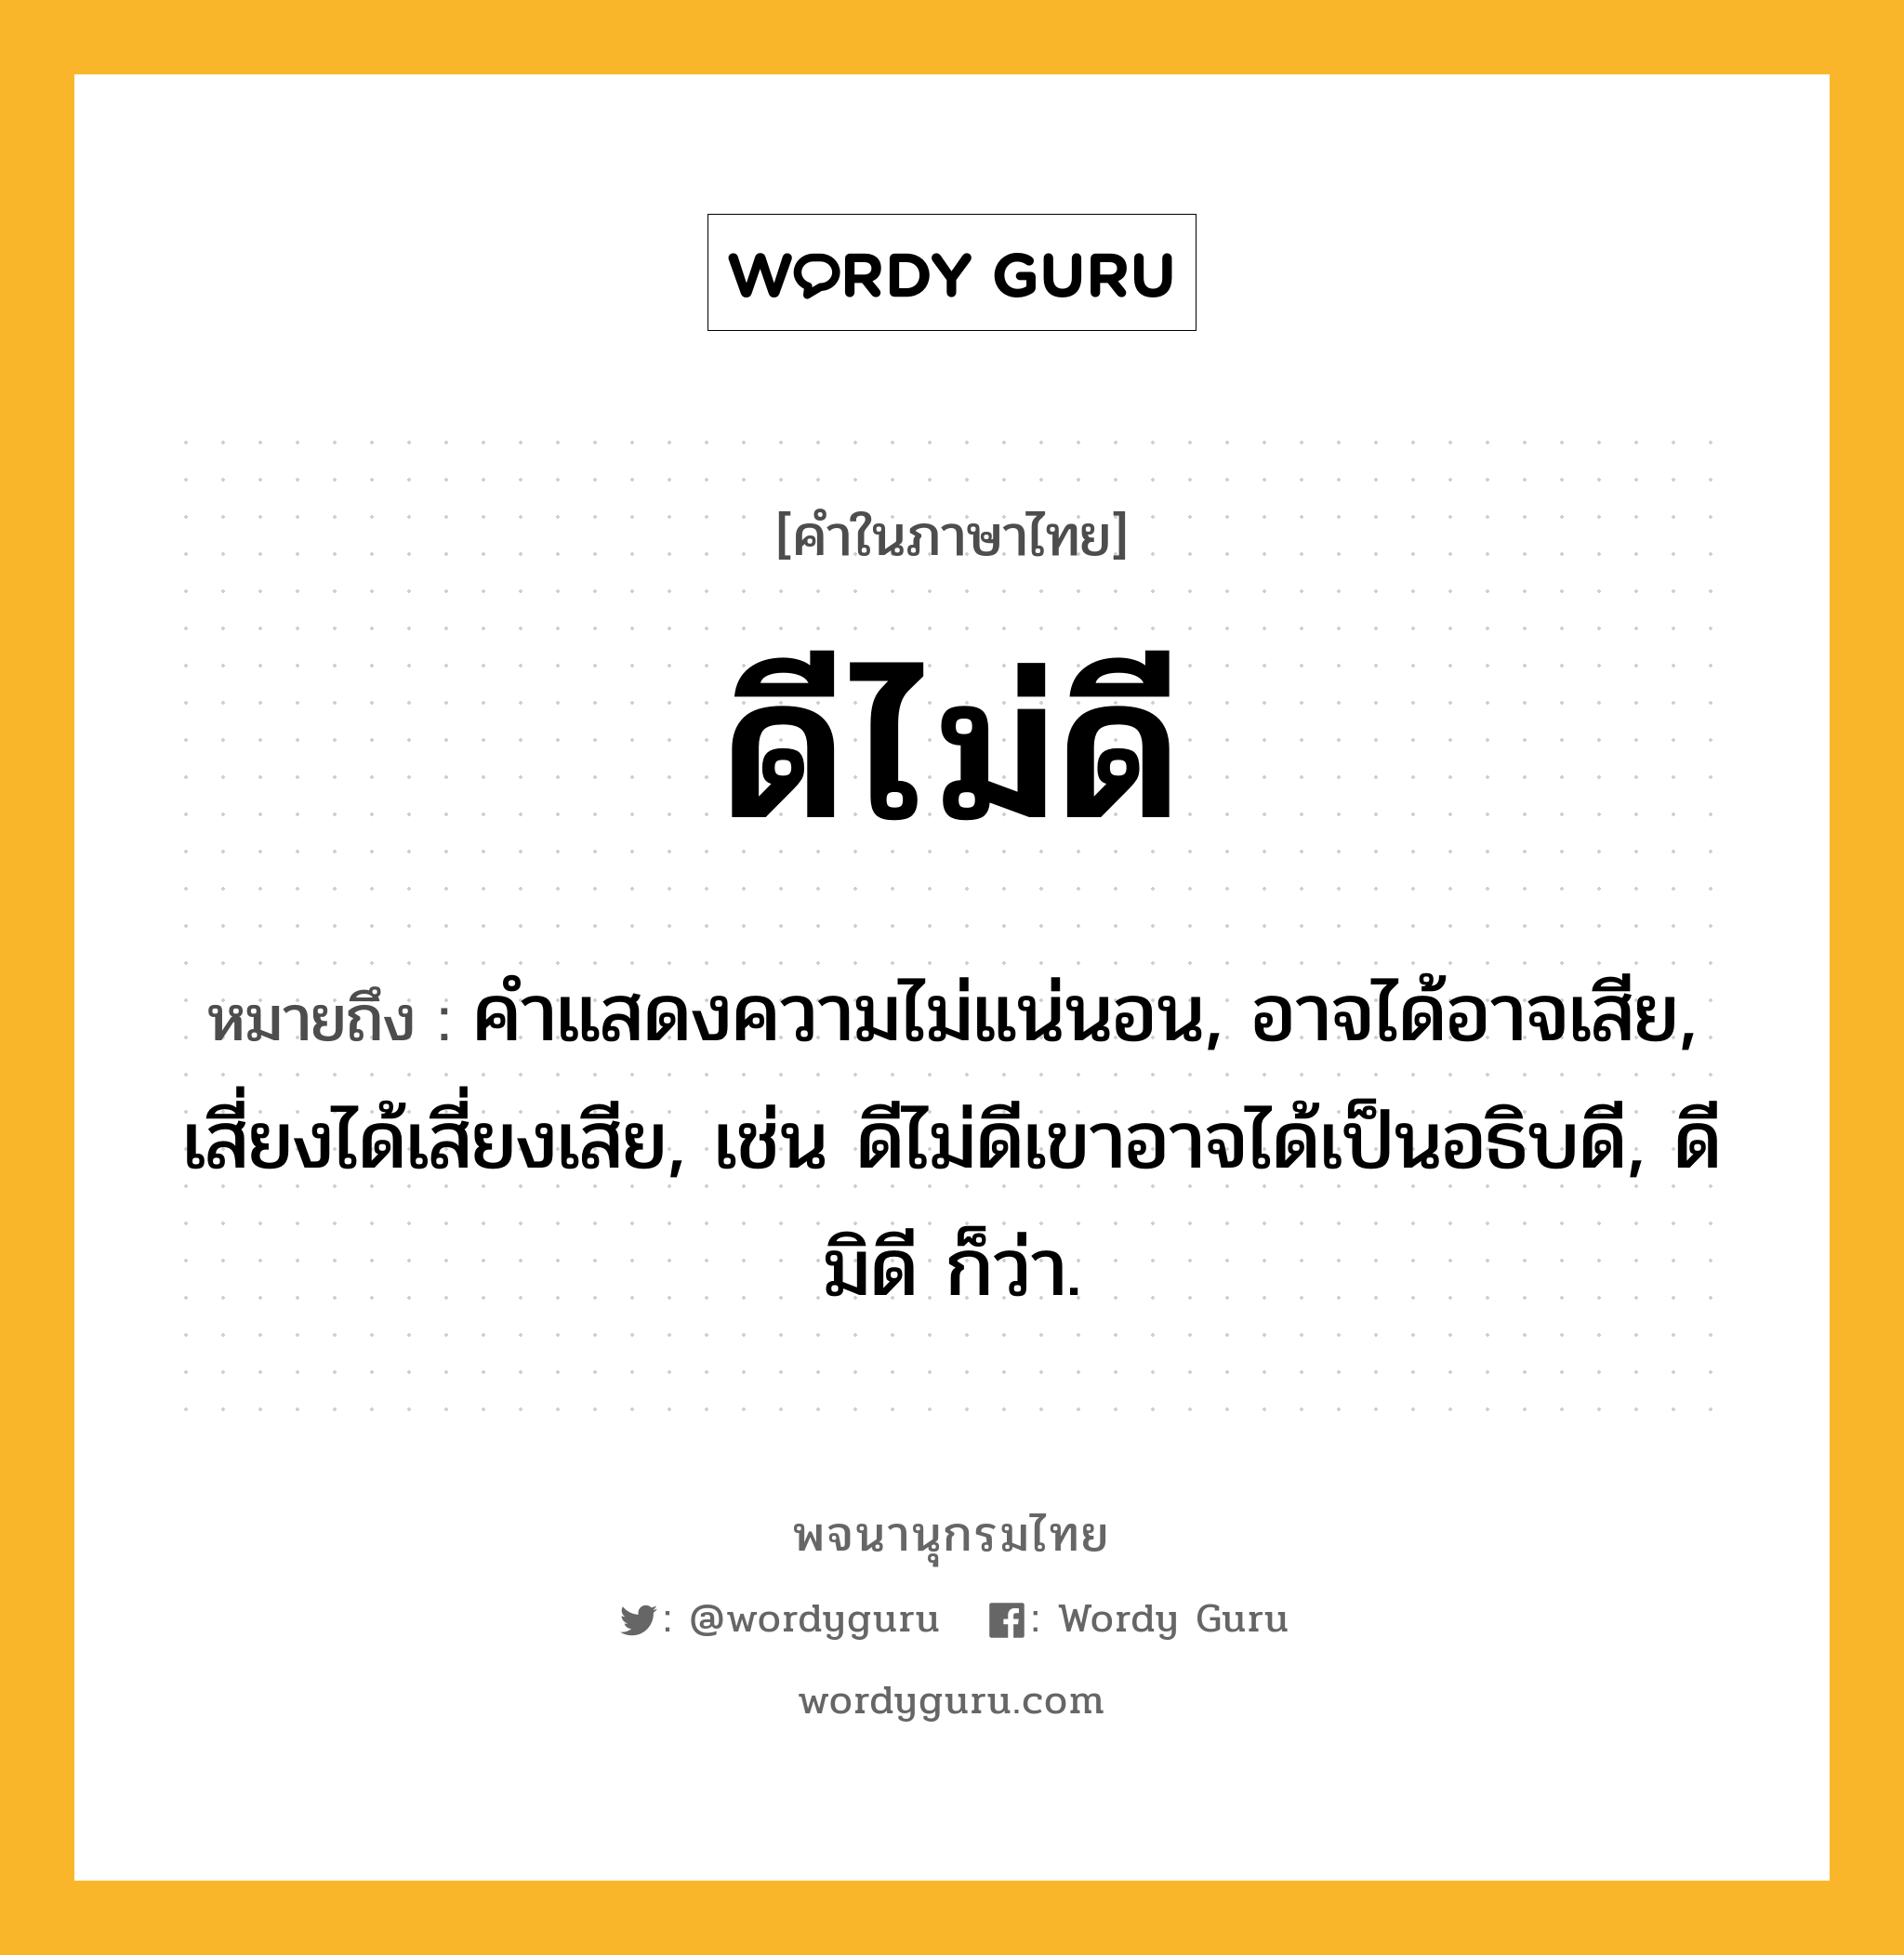 ดีไม่ดี หมายถึงอะไร?, คำในภาษาไทย ดีไม่ดี หมายถึง คําแสดงความไม่แน่นอน, อาจได้อาจเสีย, เสี่ยงได้เสี่ยงเสีย, เช่น ดีไม่ดีเขาอาจได้เป็นอธิบดี, ดีมิดี ก็ว่า.